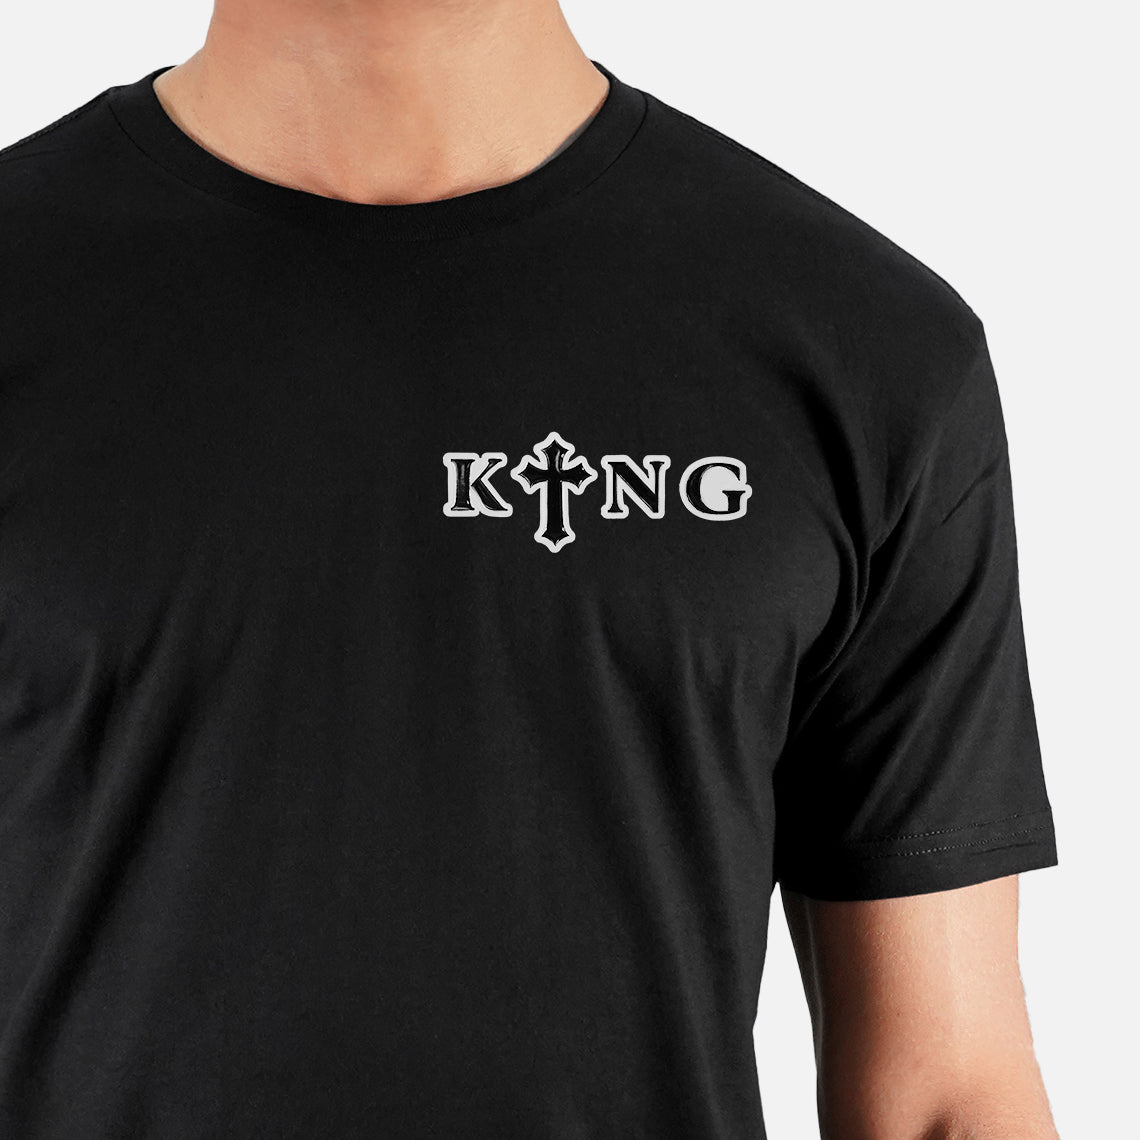 King Gothic Cross Patch Tri-Blend T-Shirt